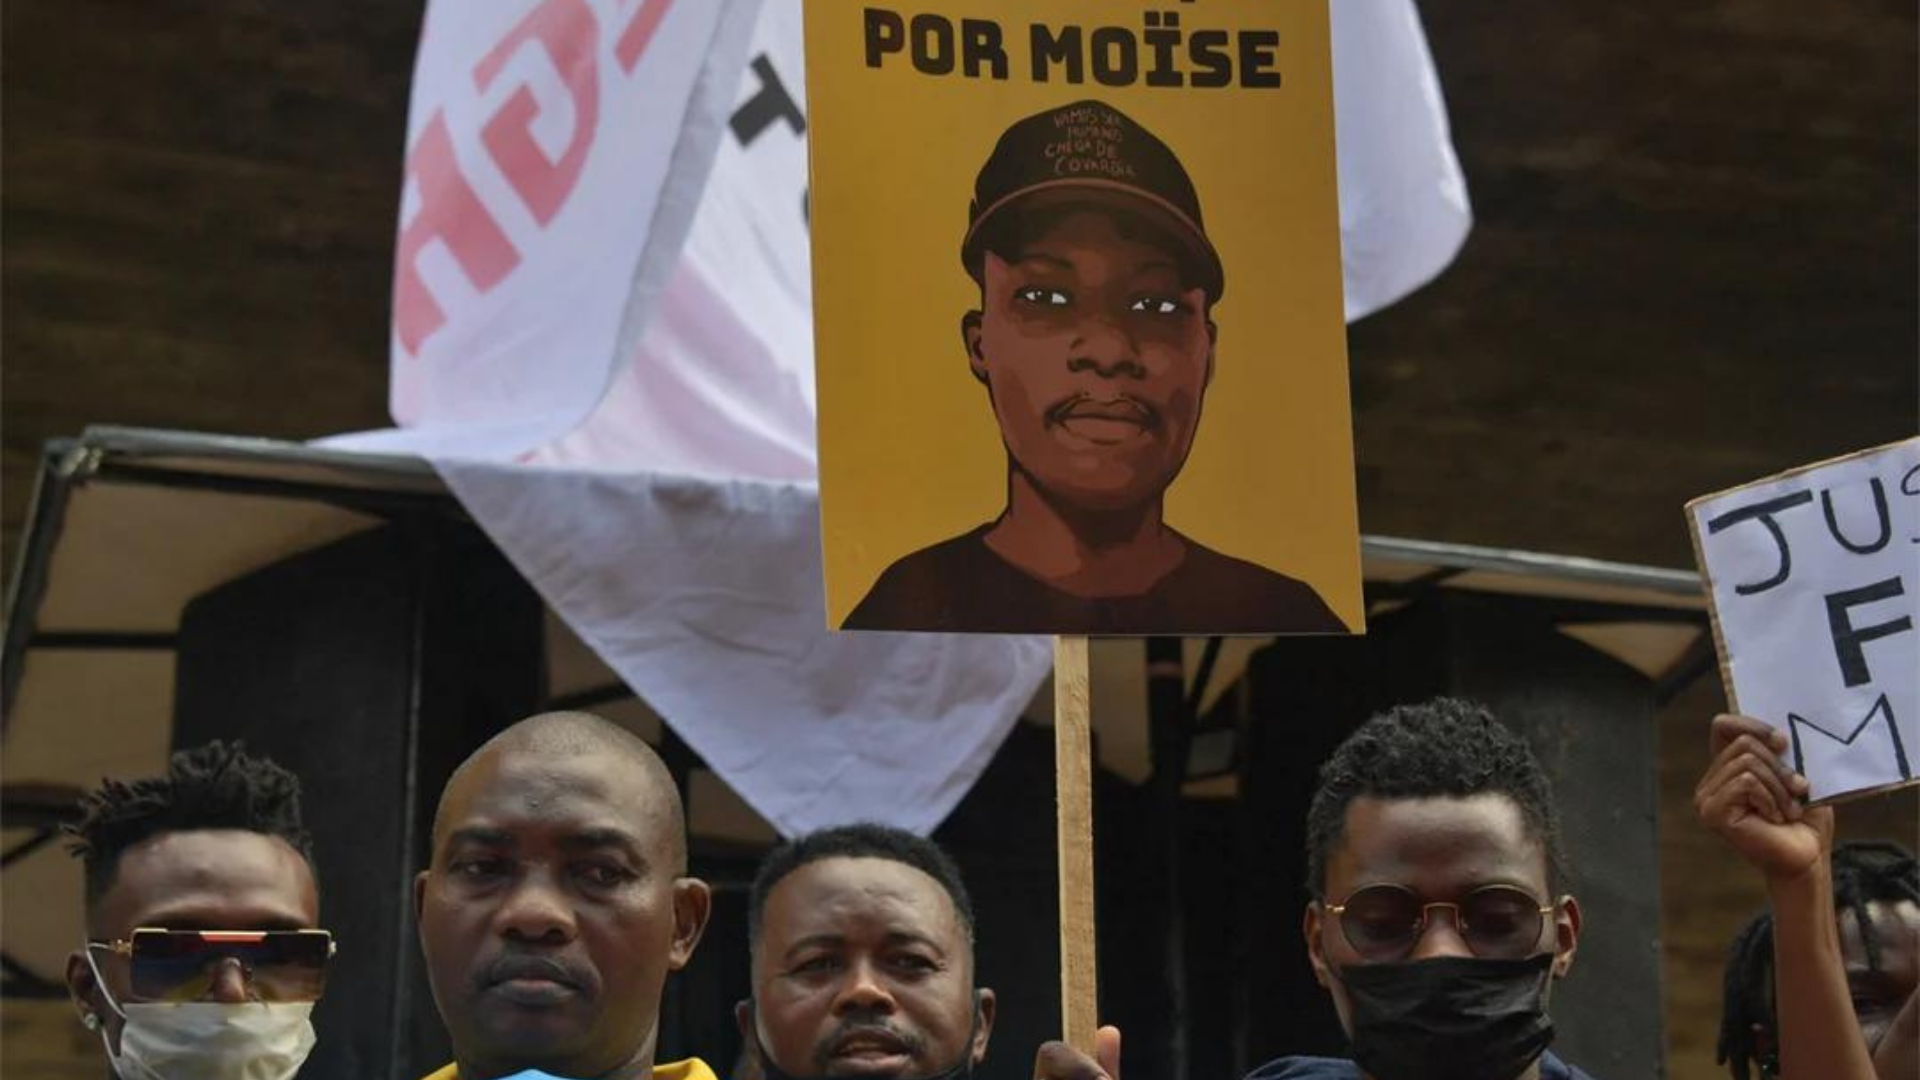 MPRJ denuncia suspeitos acusados de assassinar o congoles Moise. foto de manifestantes e um cartaz escrito "Justiça por Moïse"